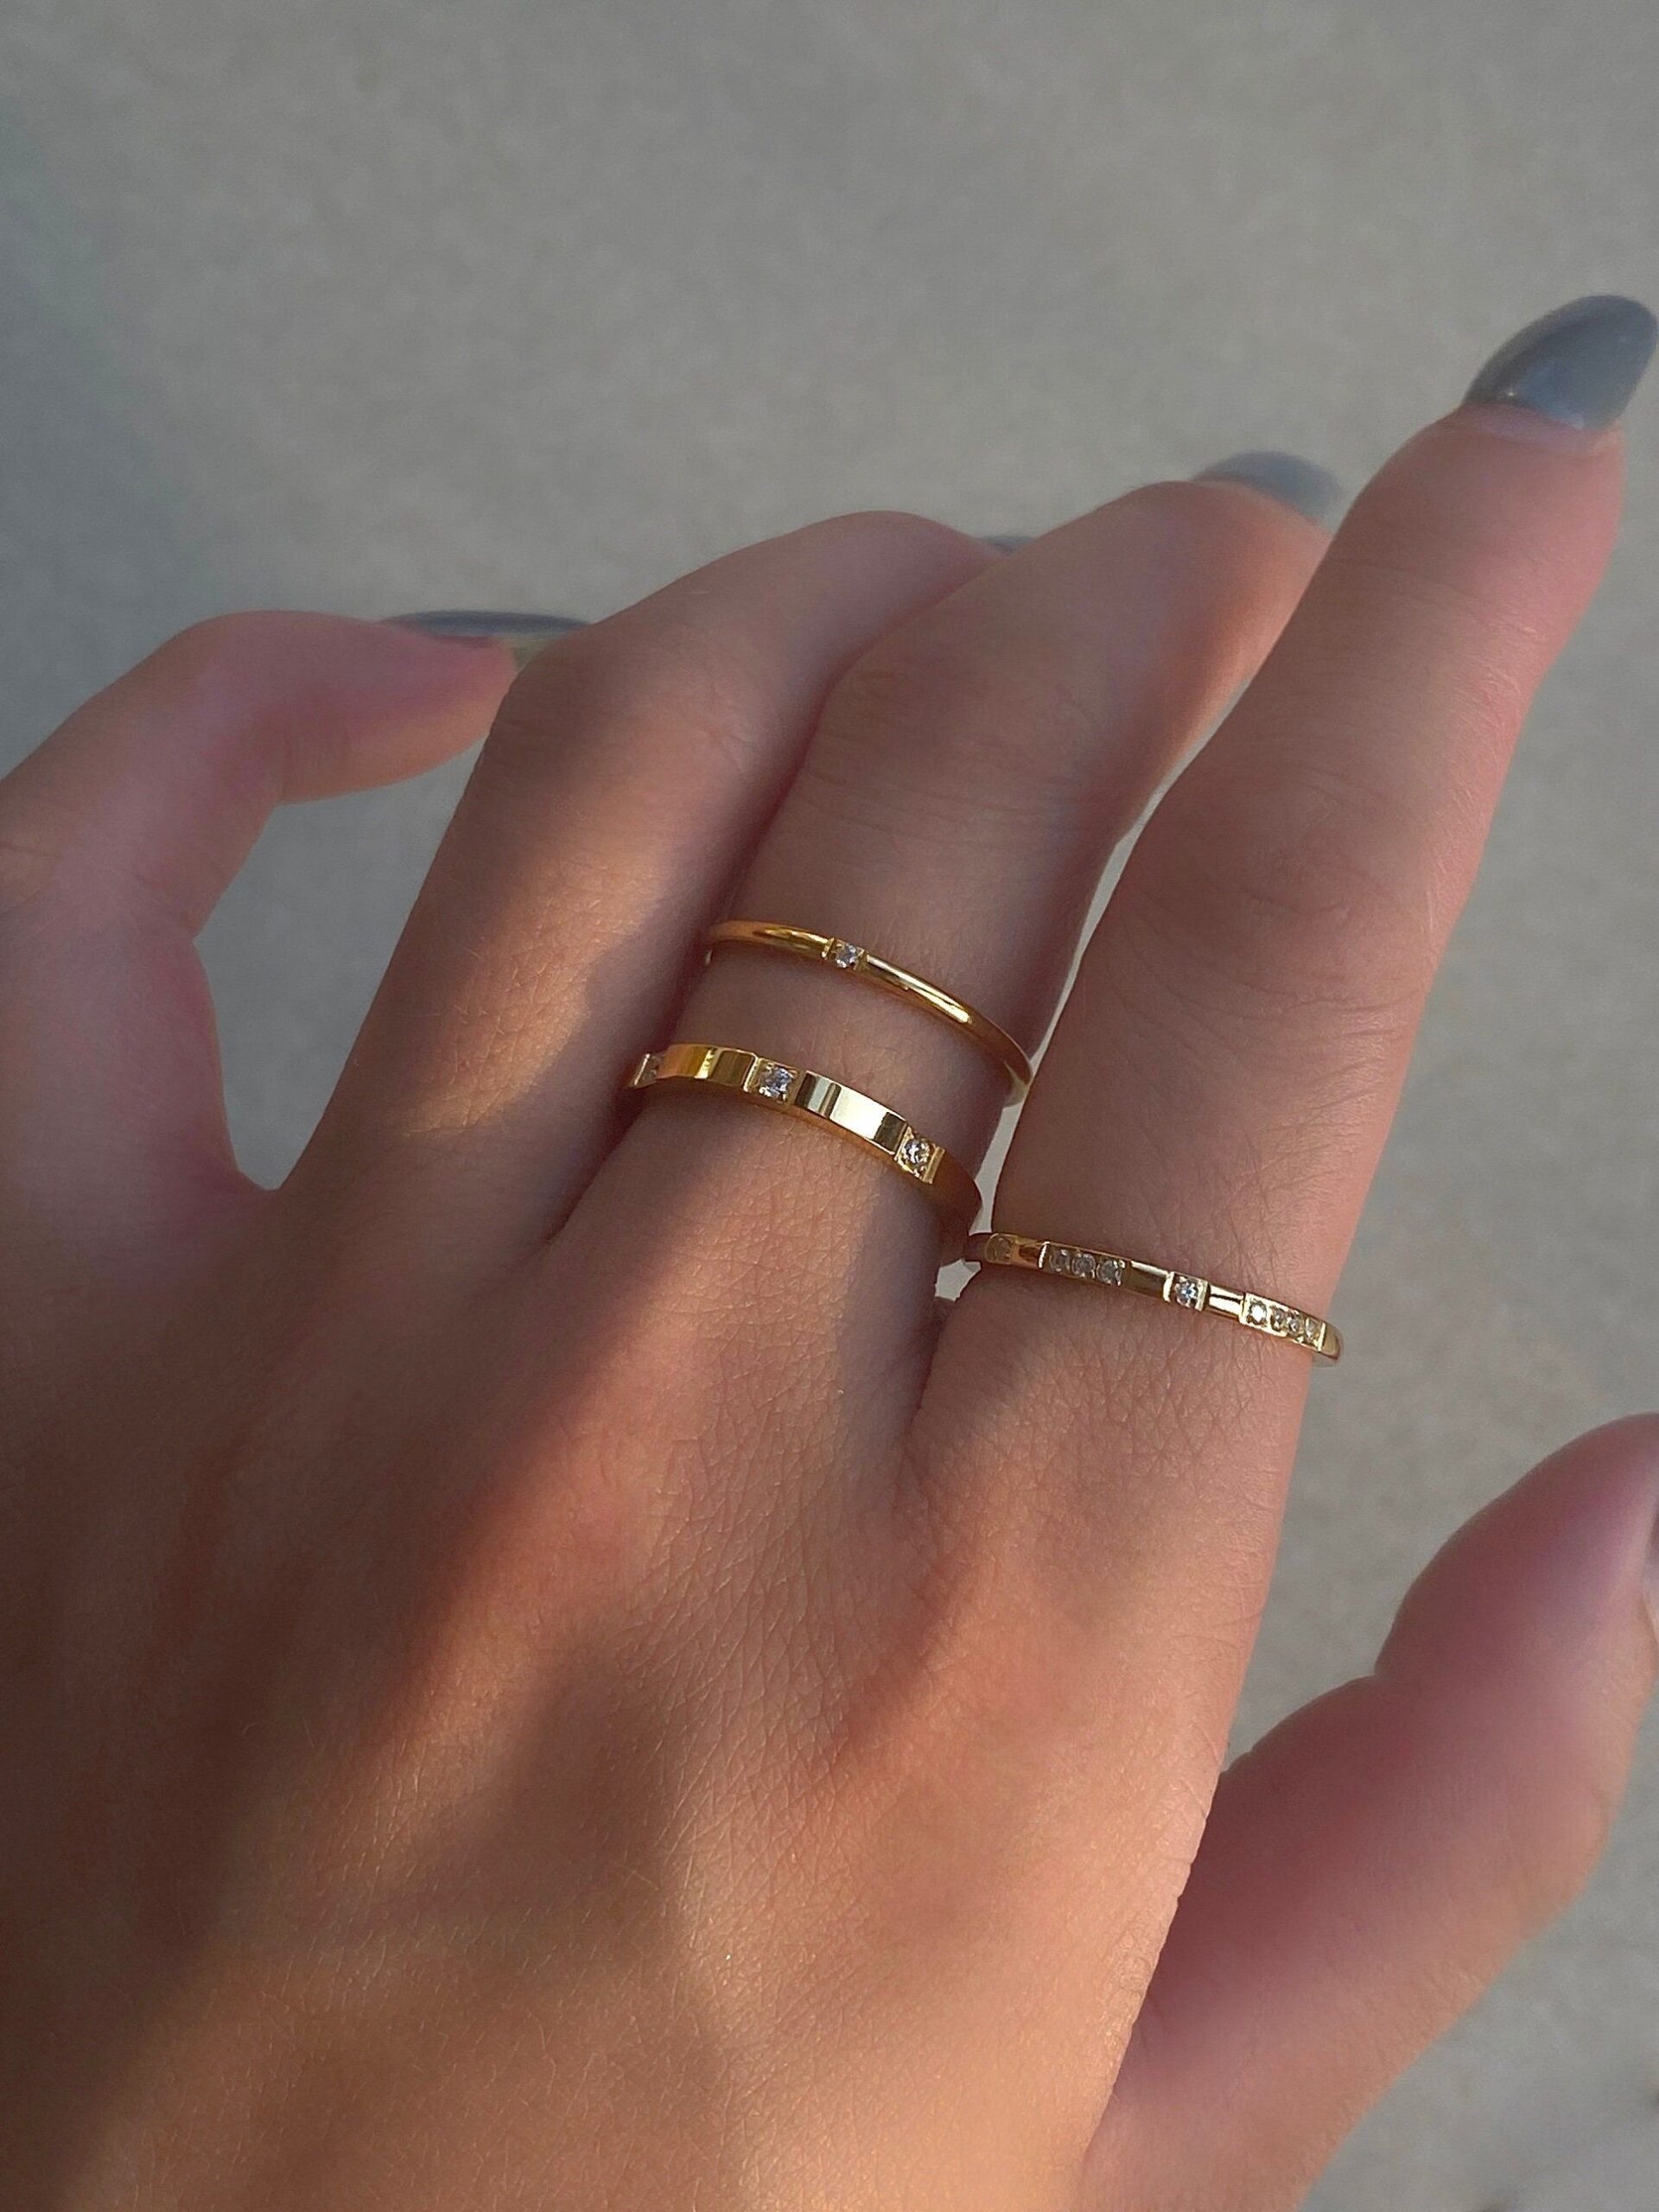 Buy elegant and stylish designer rings
for women